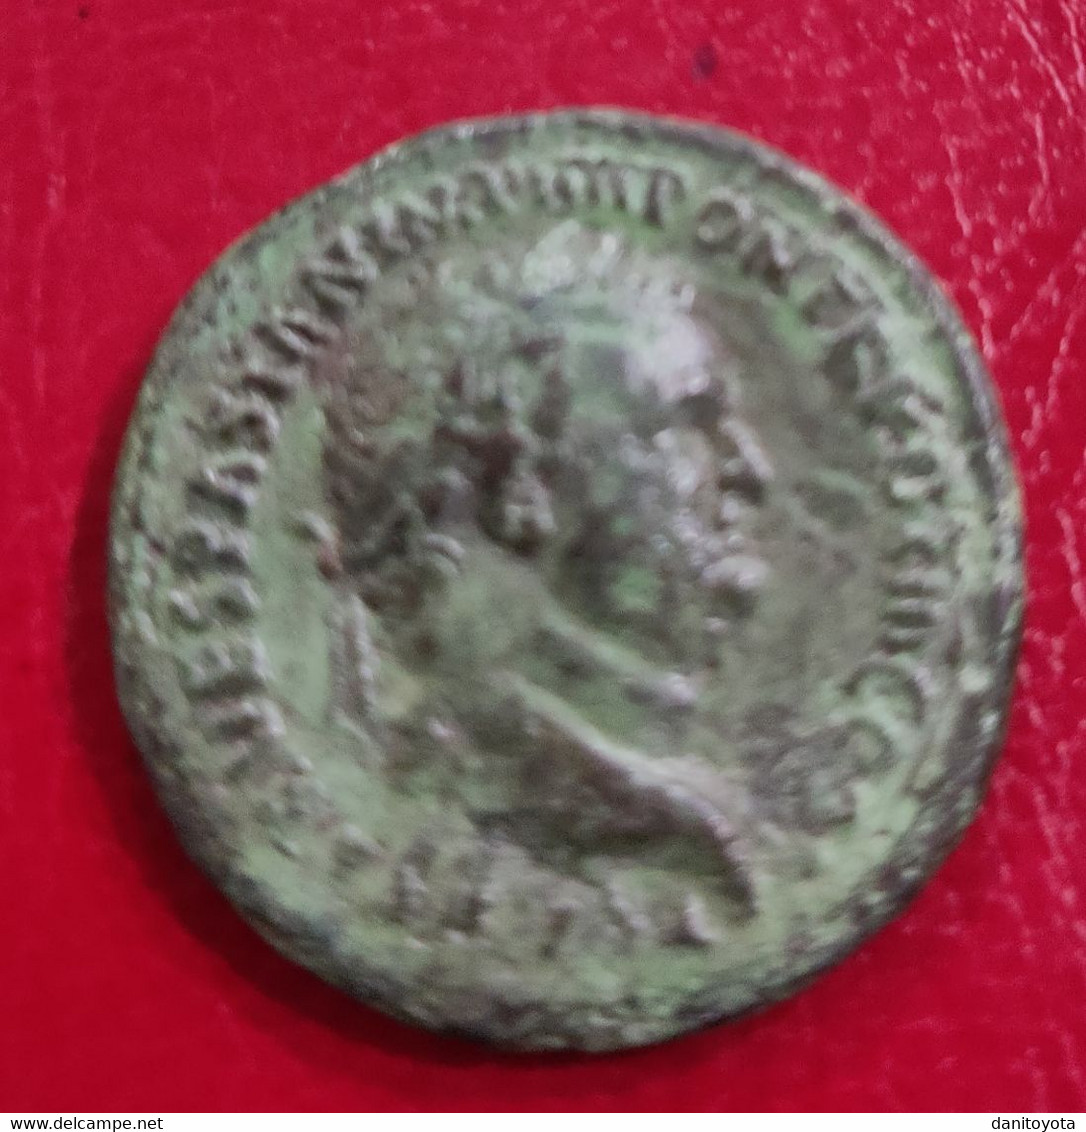 IMPERIO ROMANO. AÑO 72 D.C. DUPONDIO. TITO. PESO 10.7 GR.  REF A/F. - The Flavians (69 AD To 96 AD)